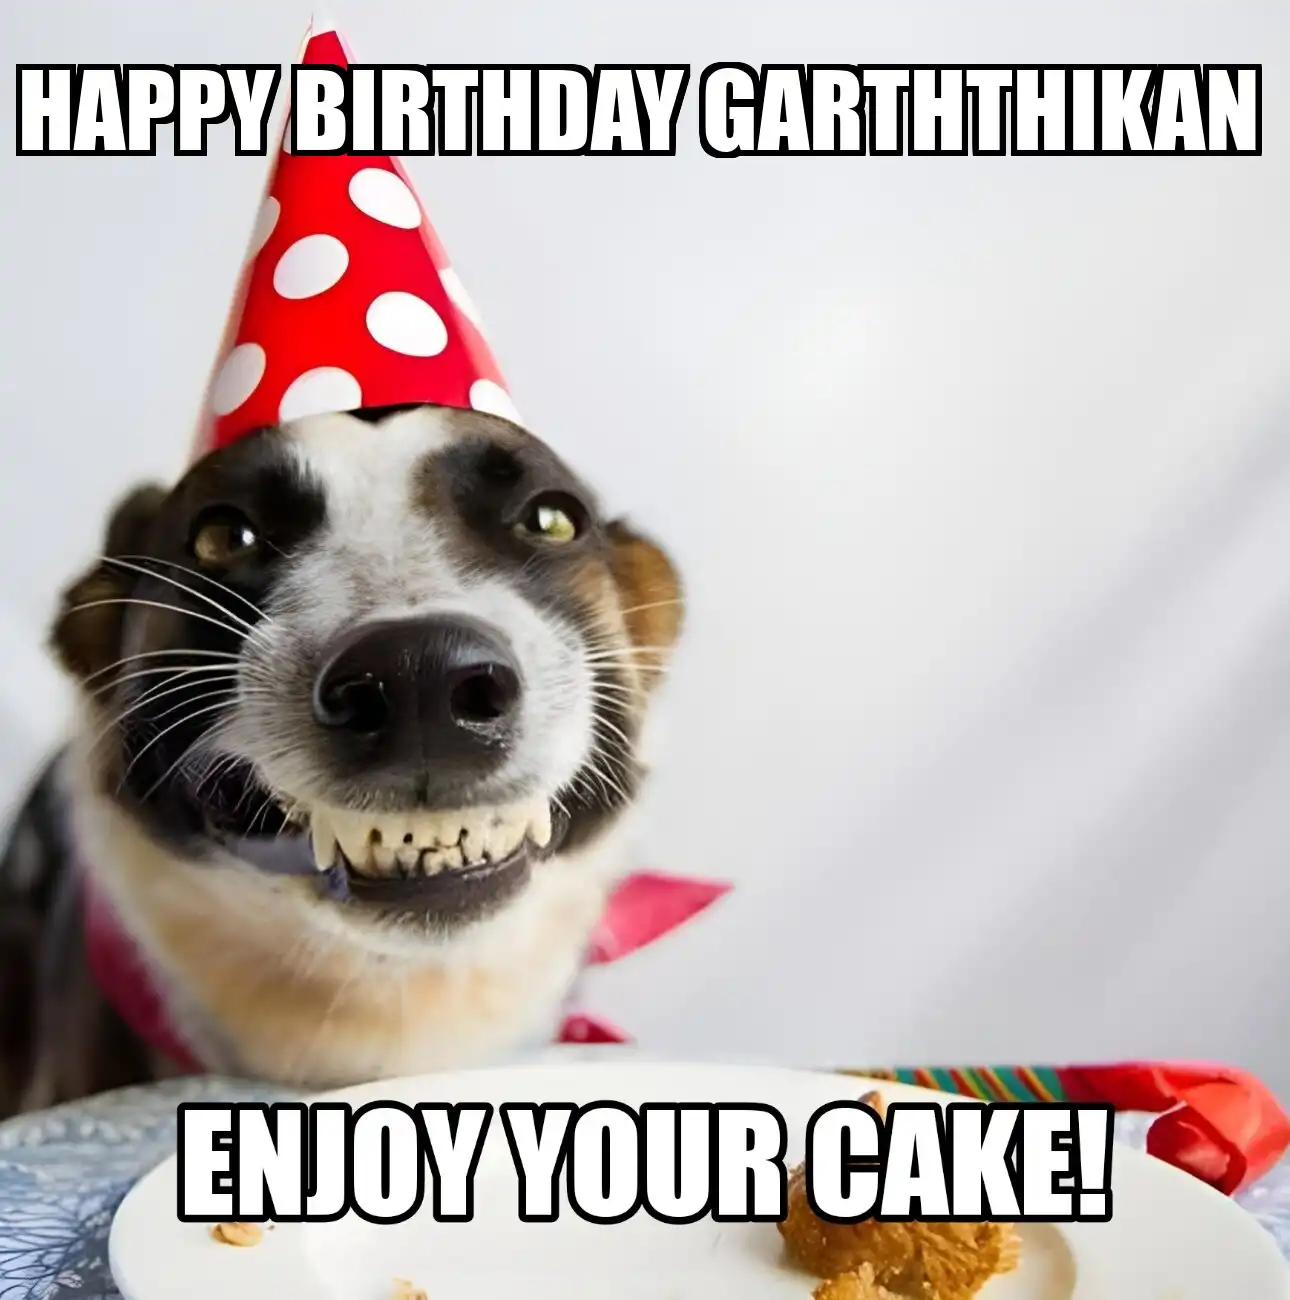 Happy Birthday Garththikan Enjoy Your Cake Dog Meme